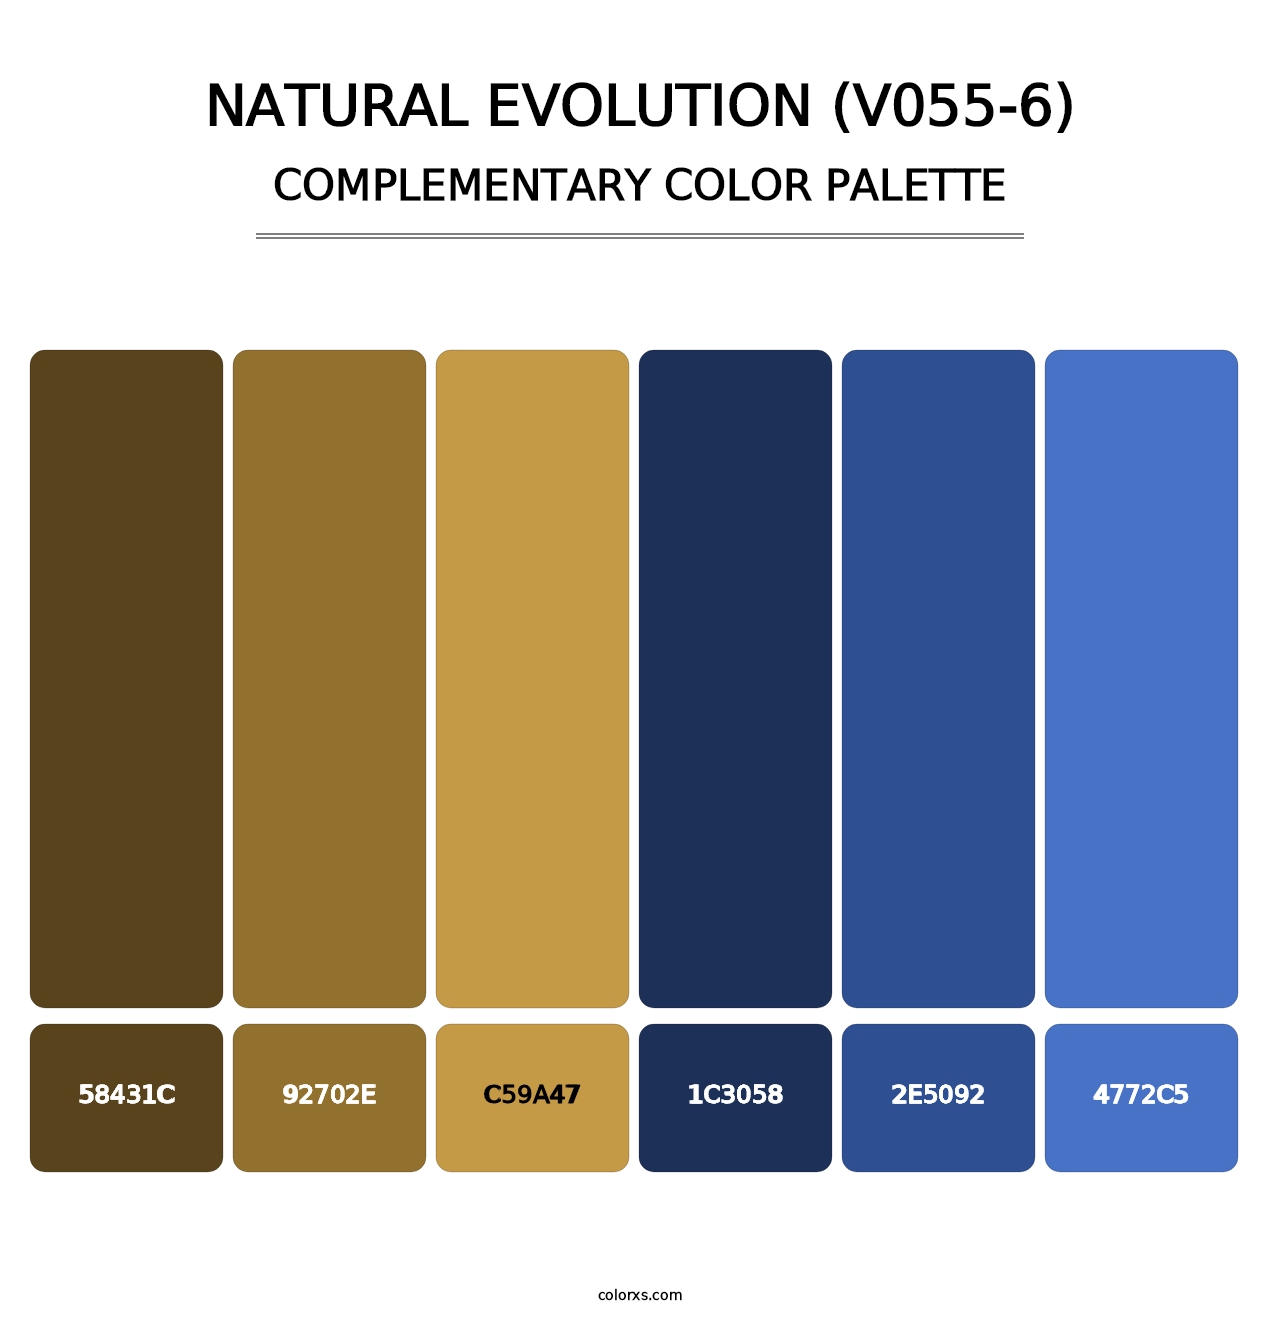 Natural Evolution (V055-6) - Complementary Color Palette